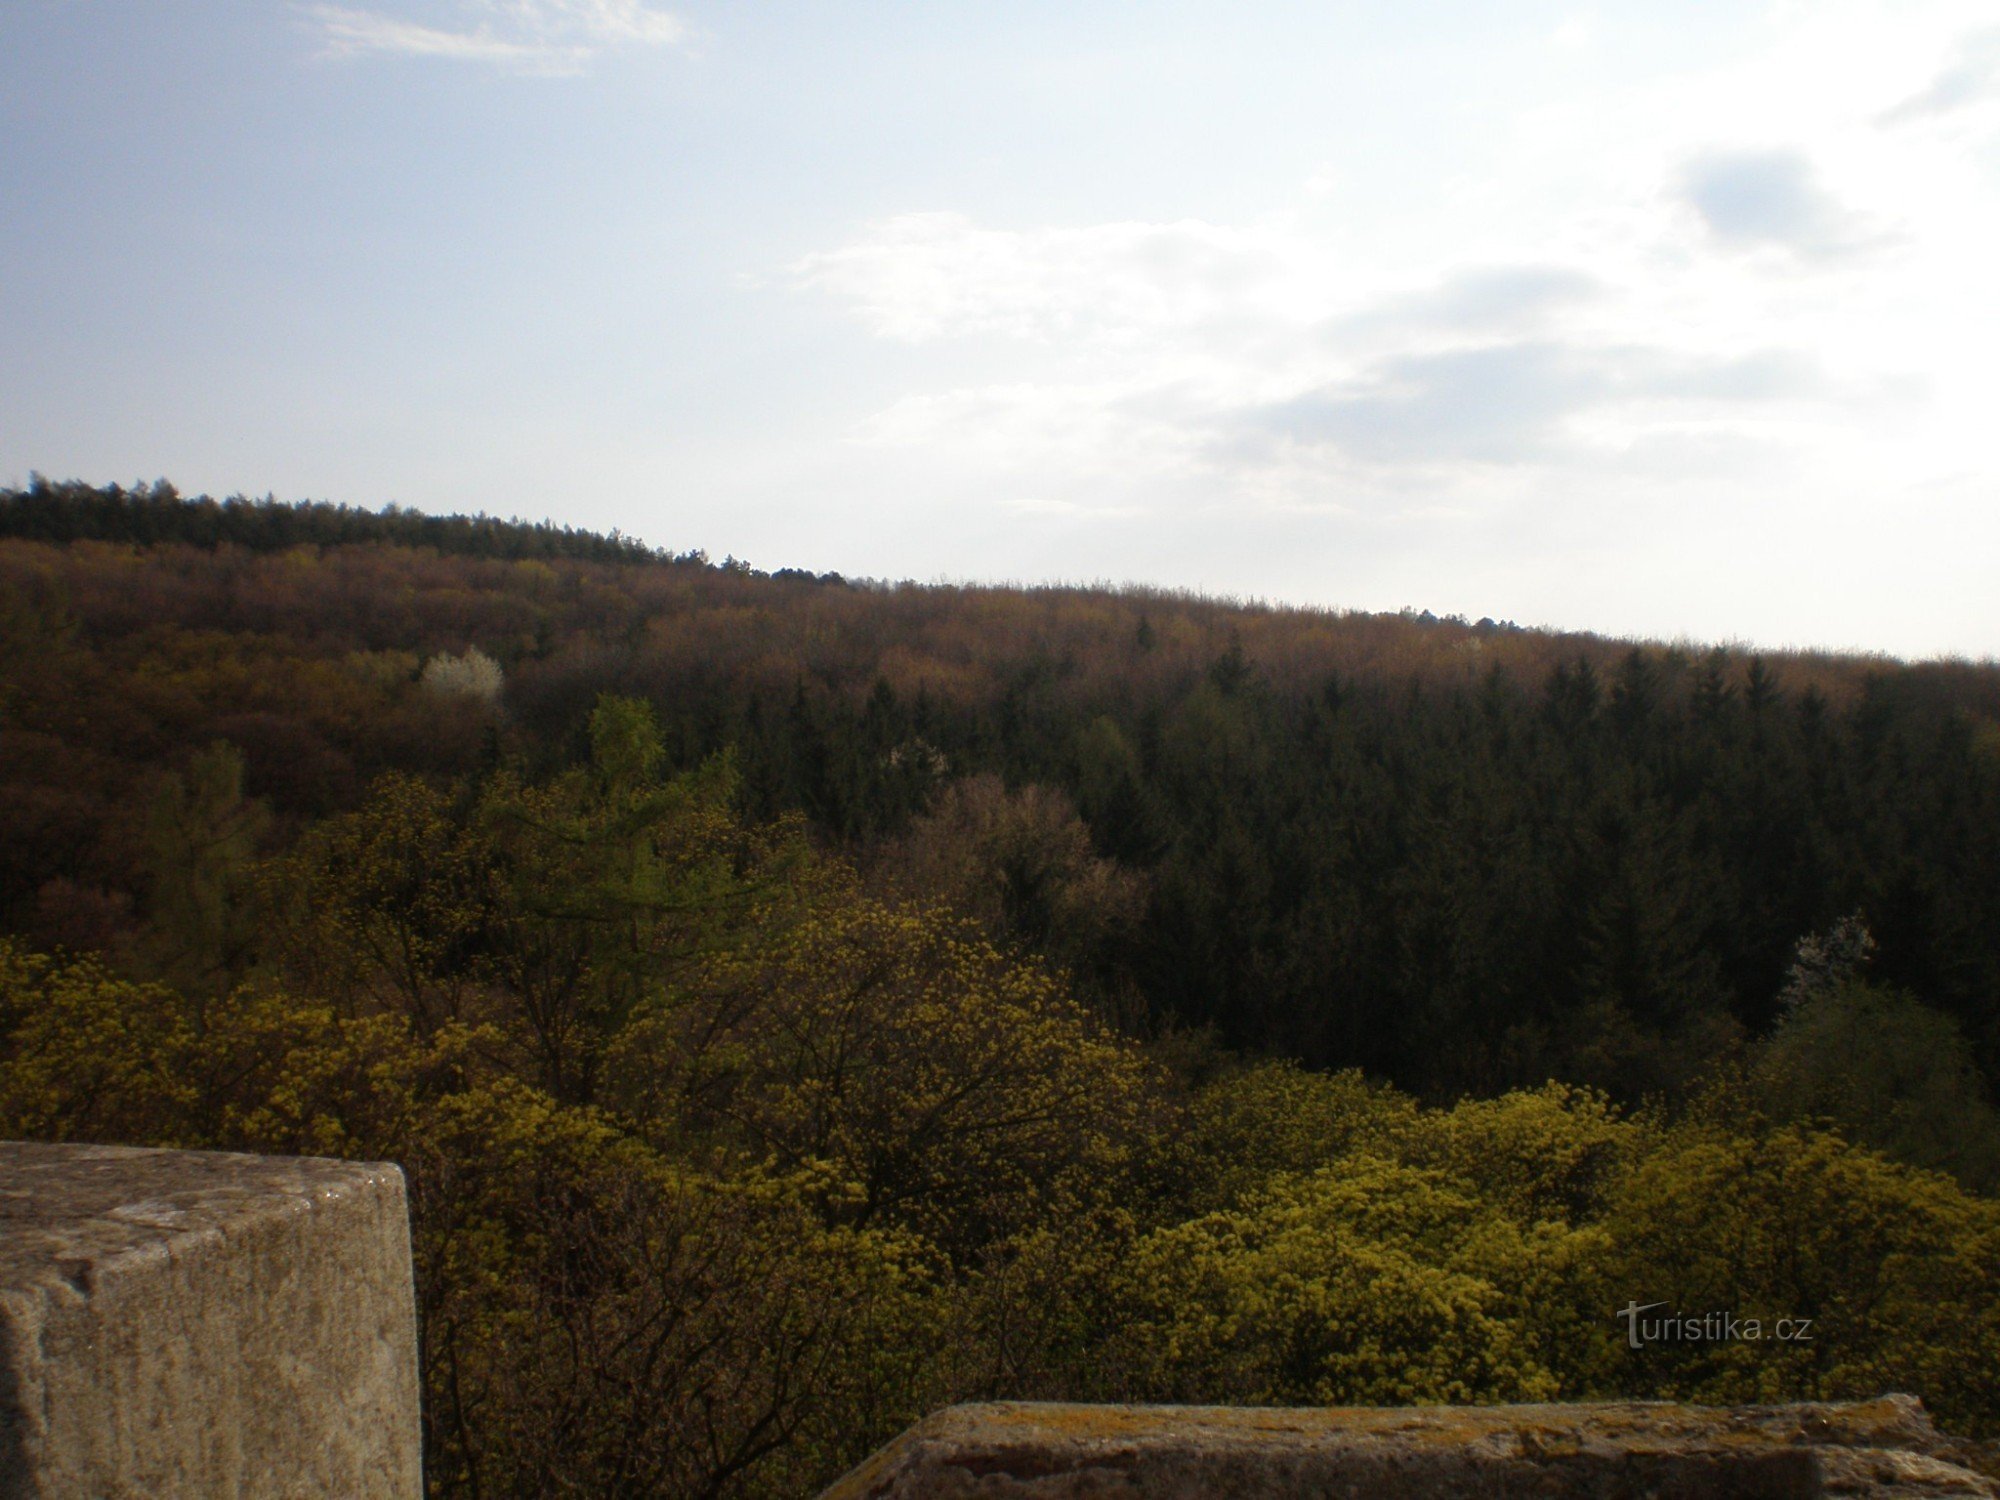 Vista da torre de observação para o parque florestal de Cibulka